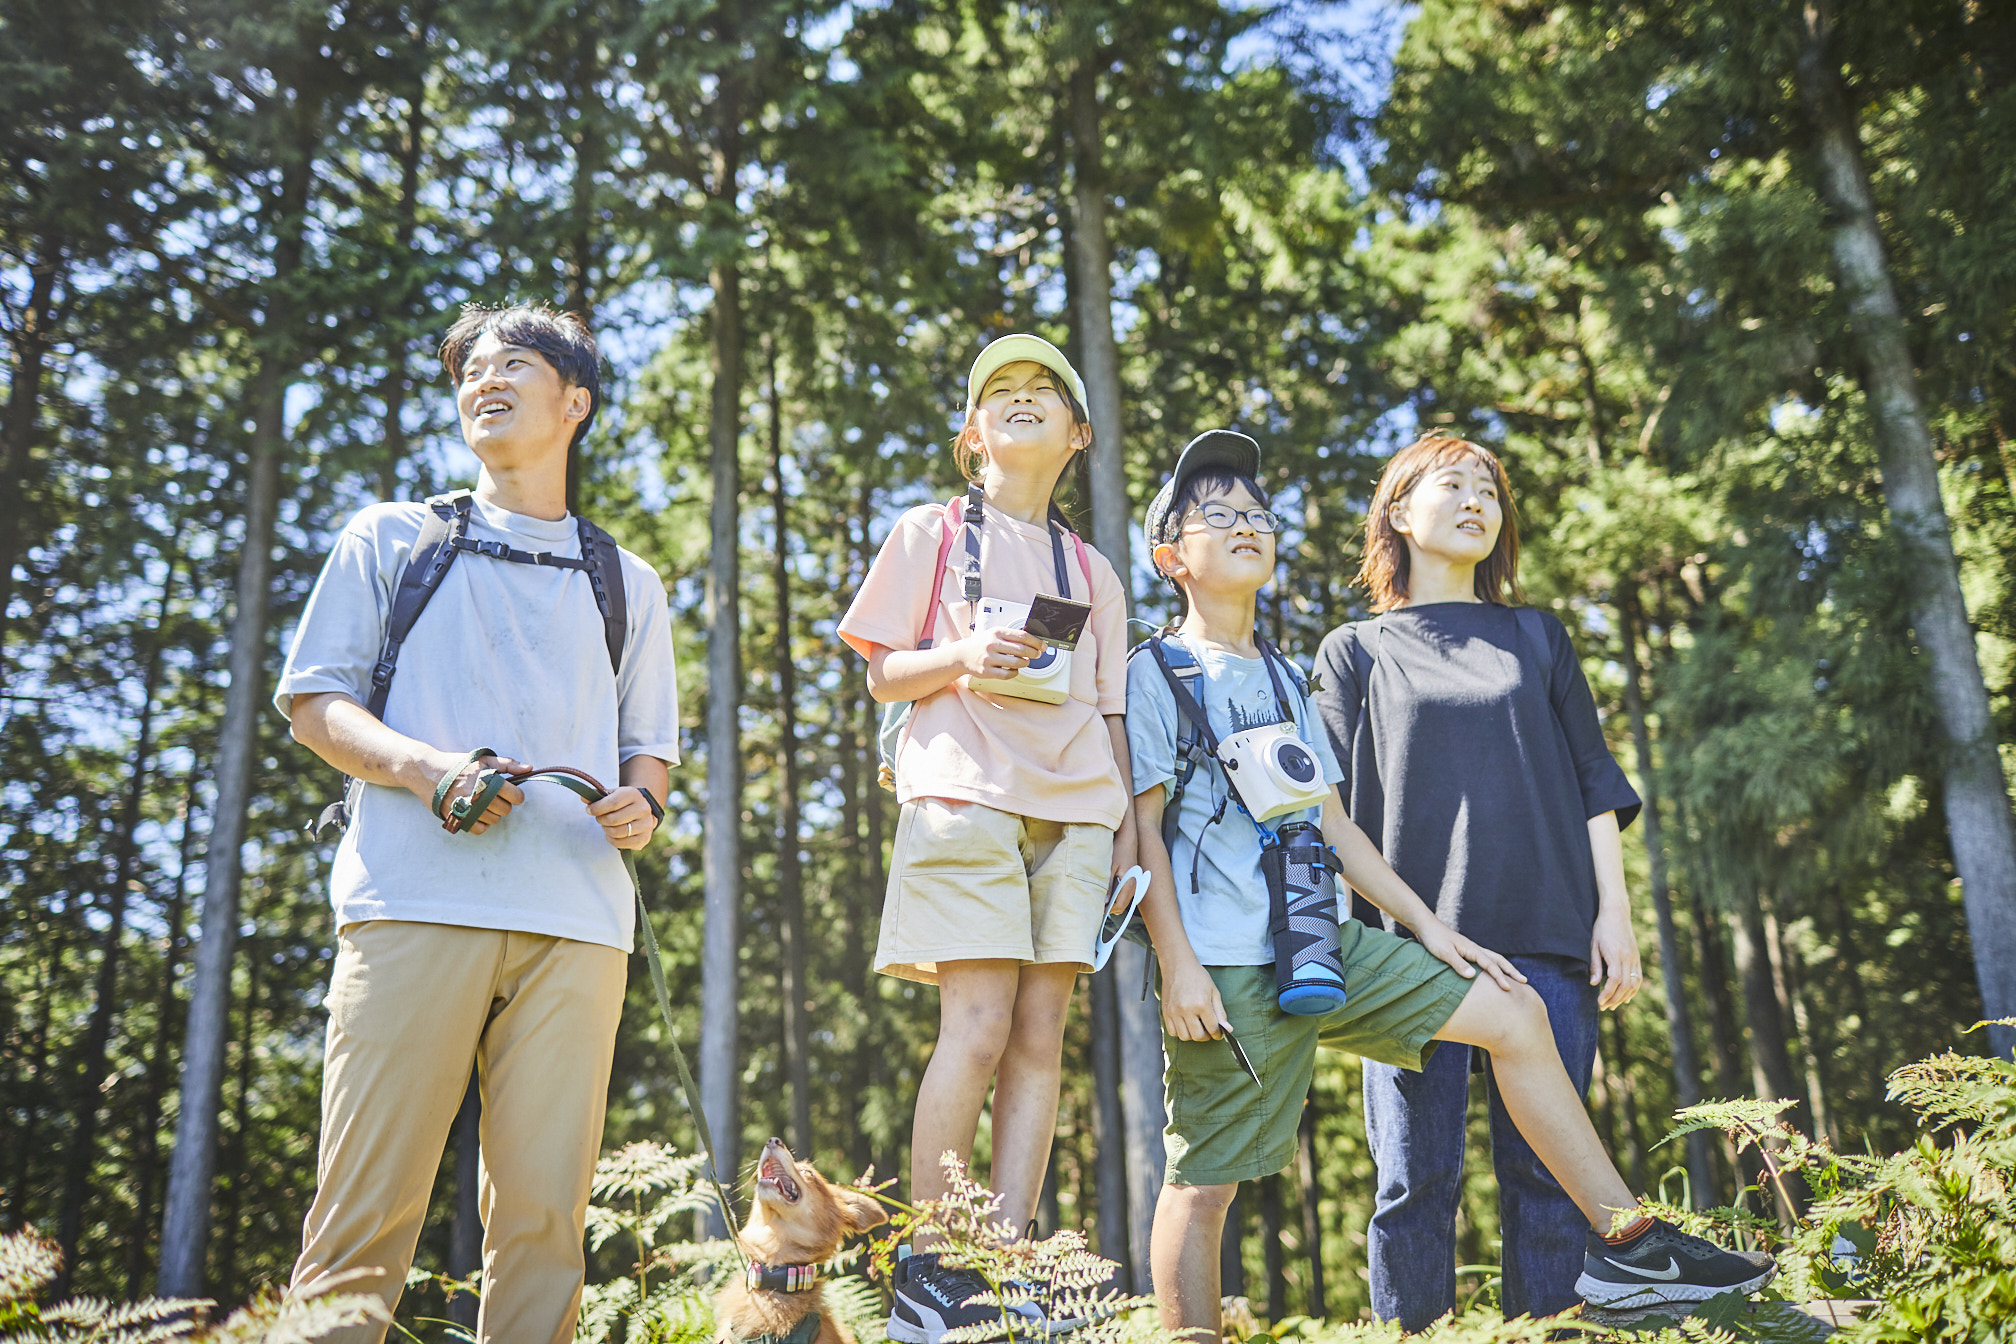 東京・檜原村の新感覚自然体験プログラム「裏山アート探検隊 みっける